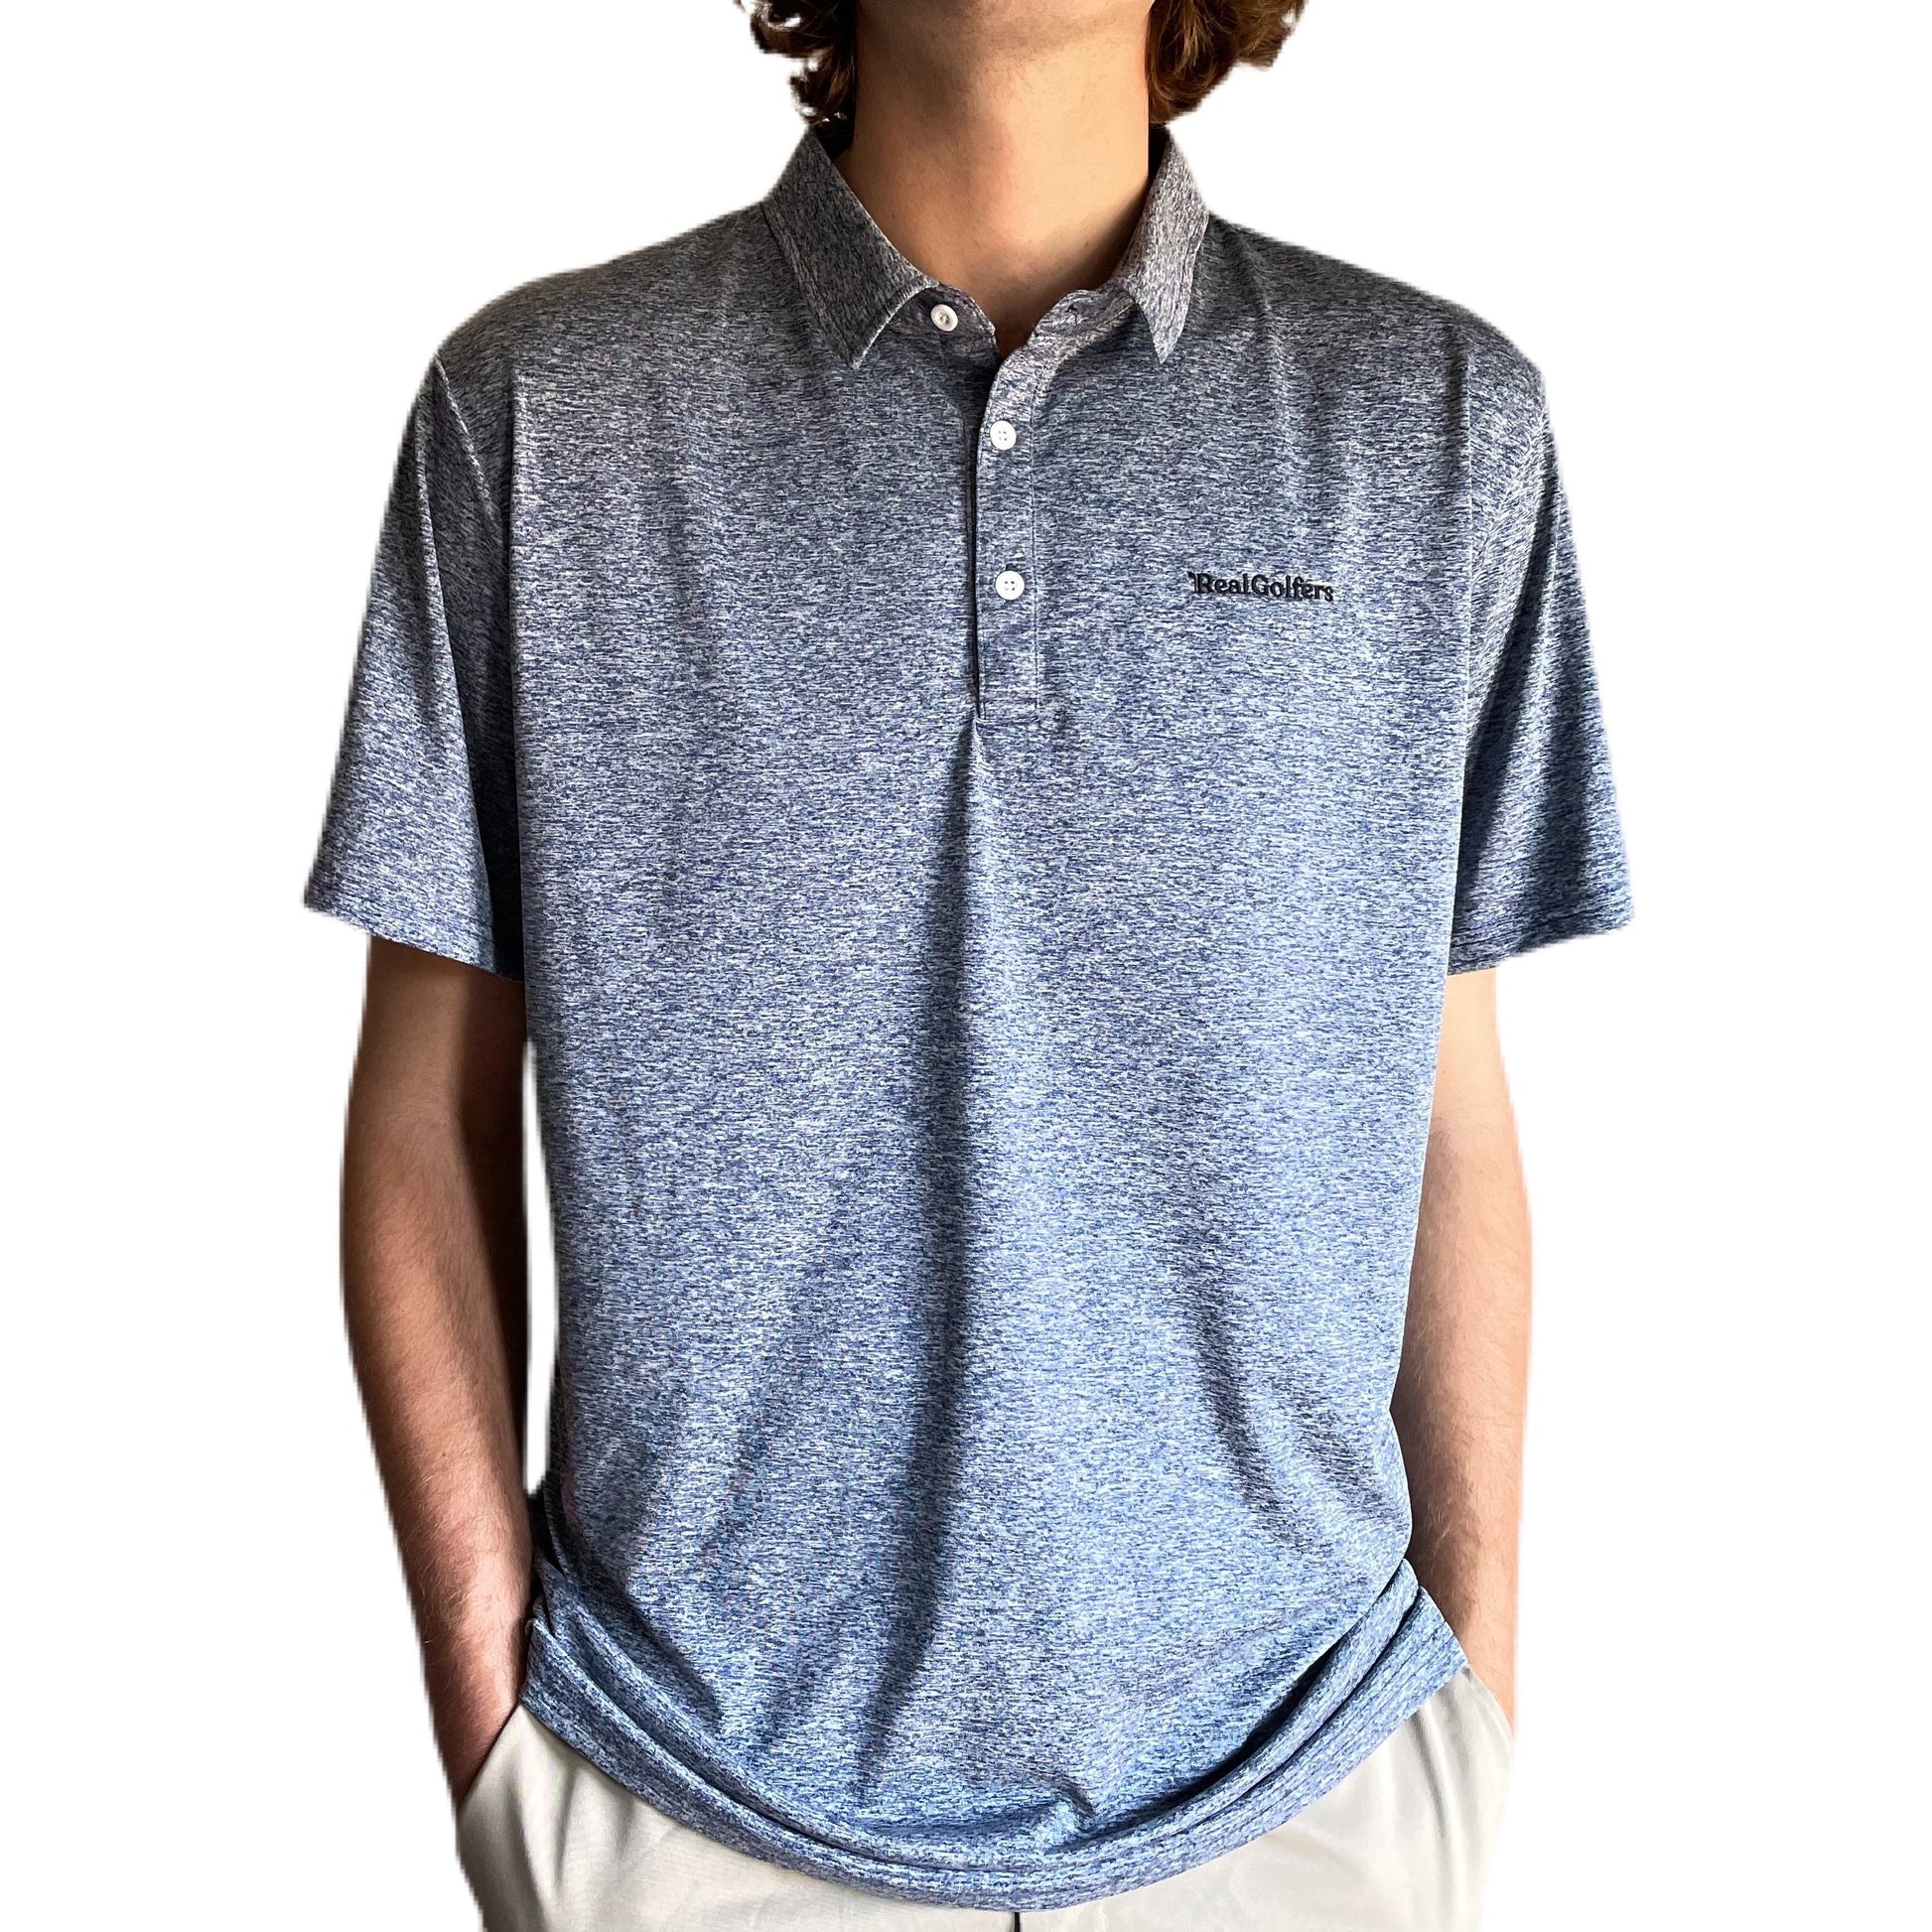  Blue Grey Fabric Blend Golf Shirt